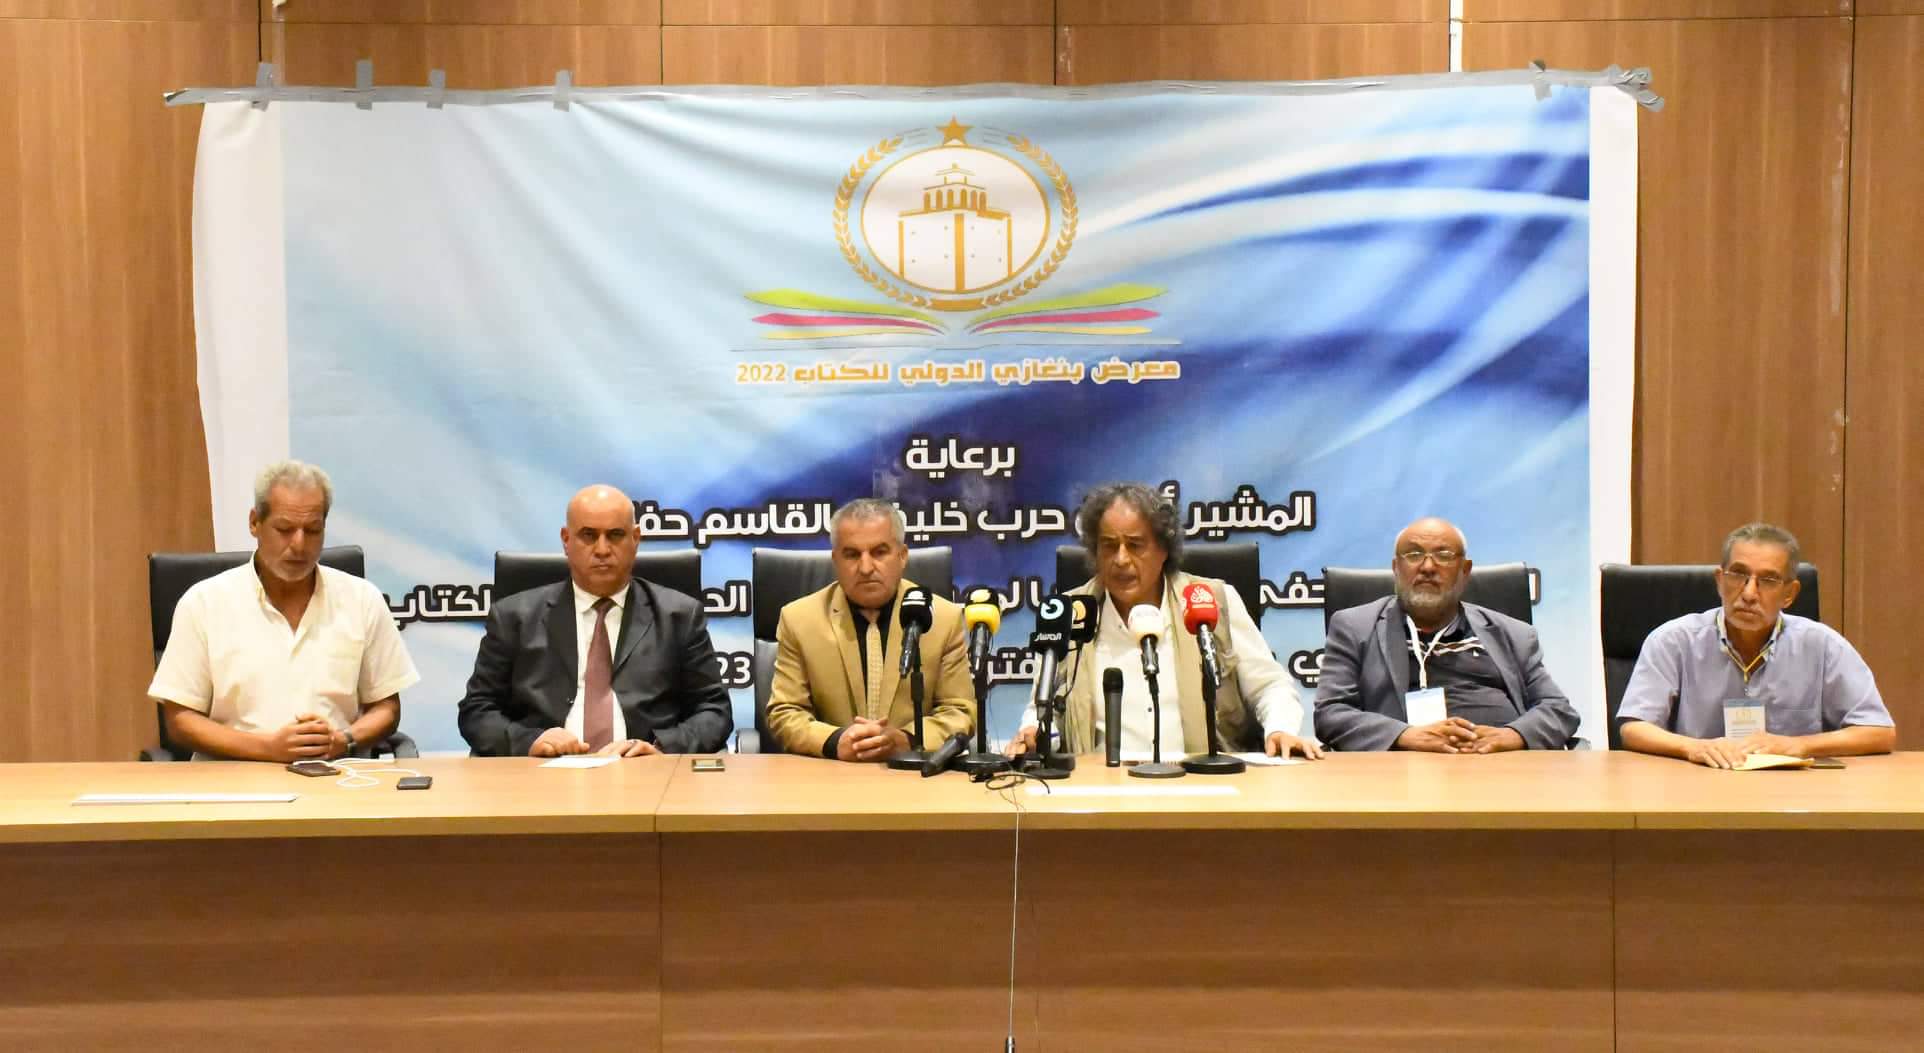 وال| بنغازي .. مؤتمر صحفي للجنة العليا لمعرض بنغازي الدولي الأول للكتاب 2022م